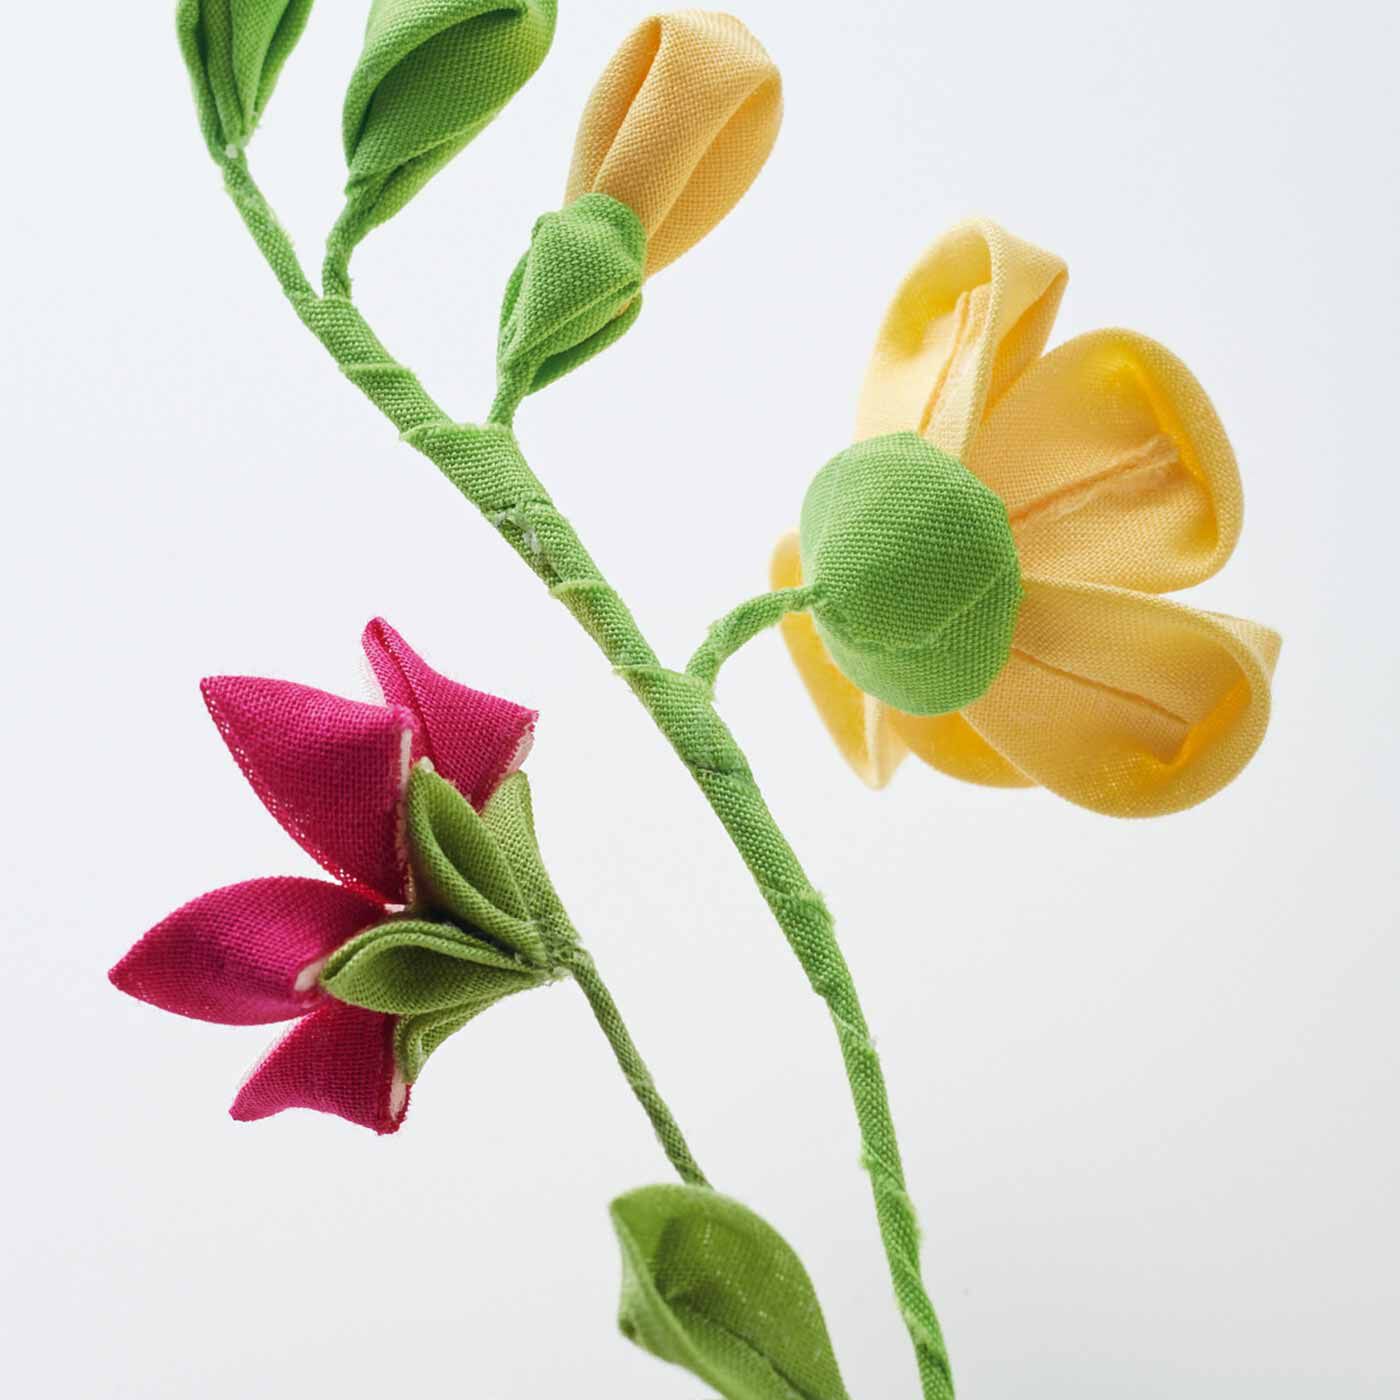 クチュリエ|繊細さにうっとり 毎日をやさしく彩る つまみ細工の小さな花束の会|花びらやがくなどの裏側の表情にもこだわりが。